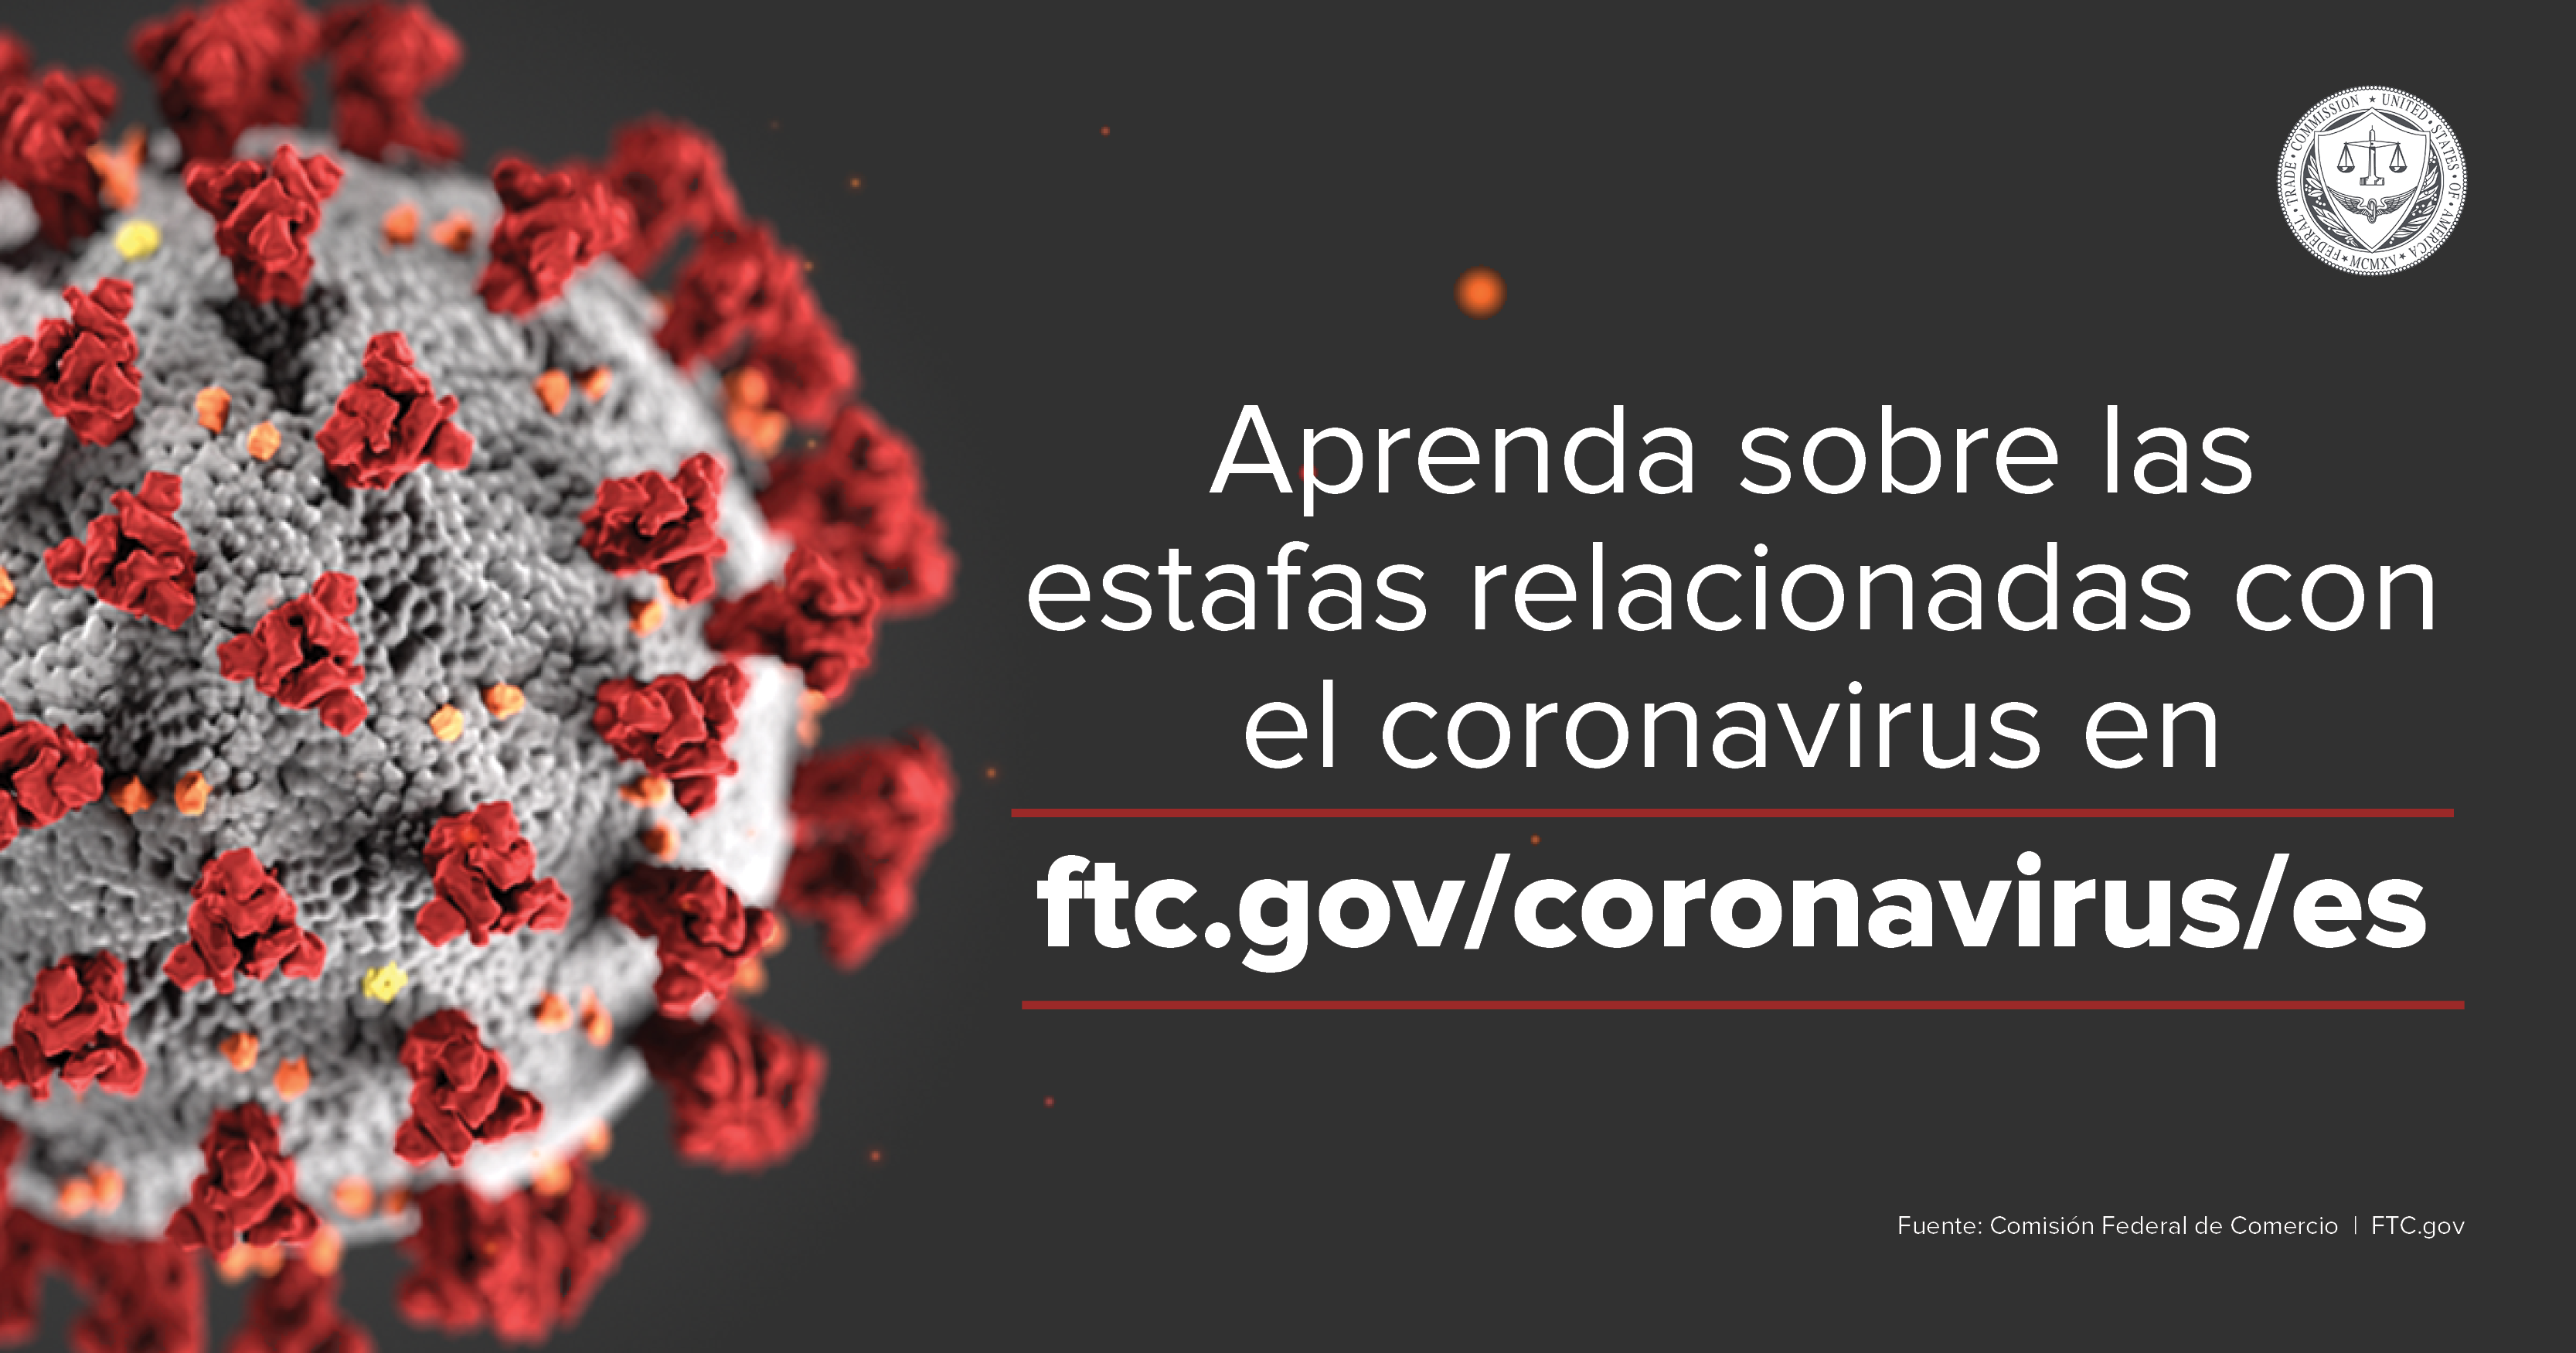 Estafas relacionadas con el coronavirus: Que esta haciendo la FTC